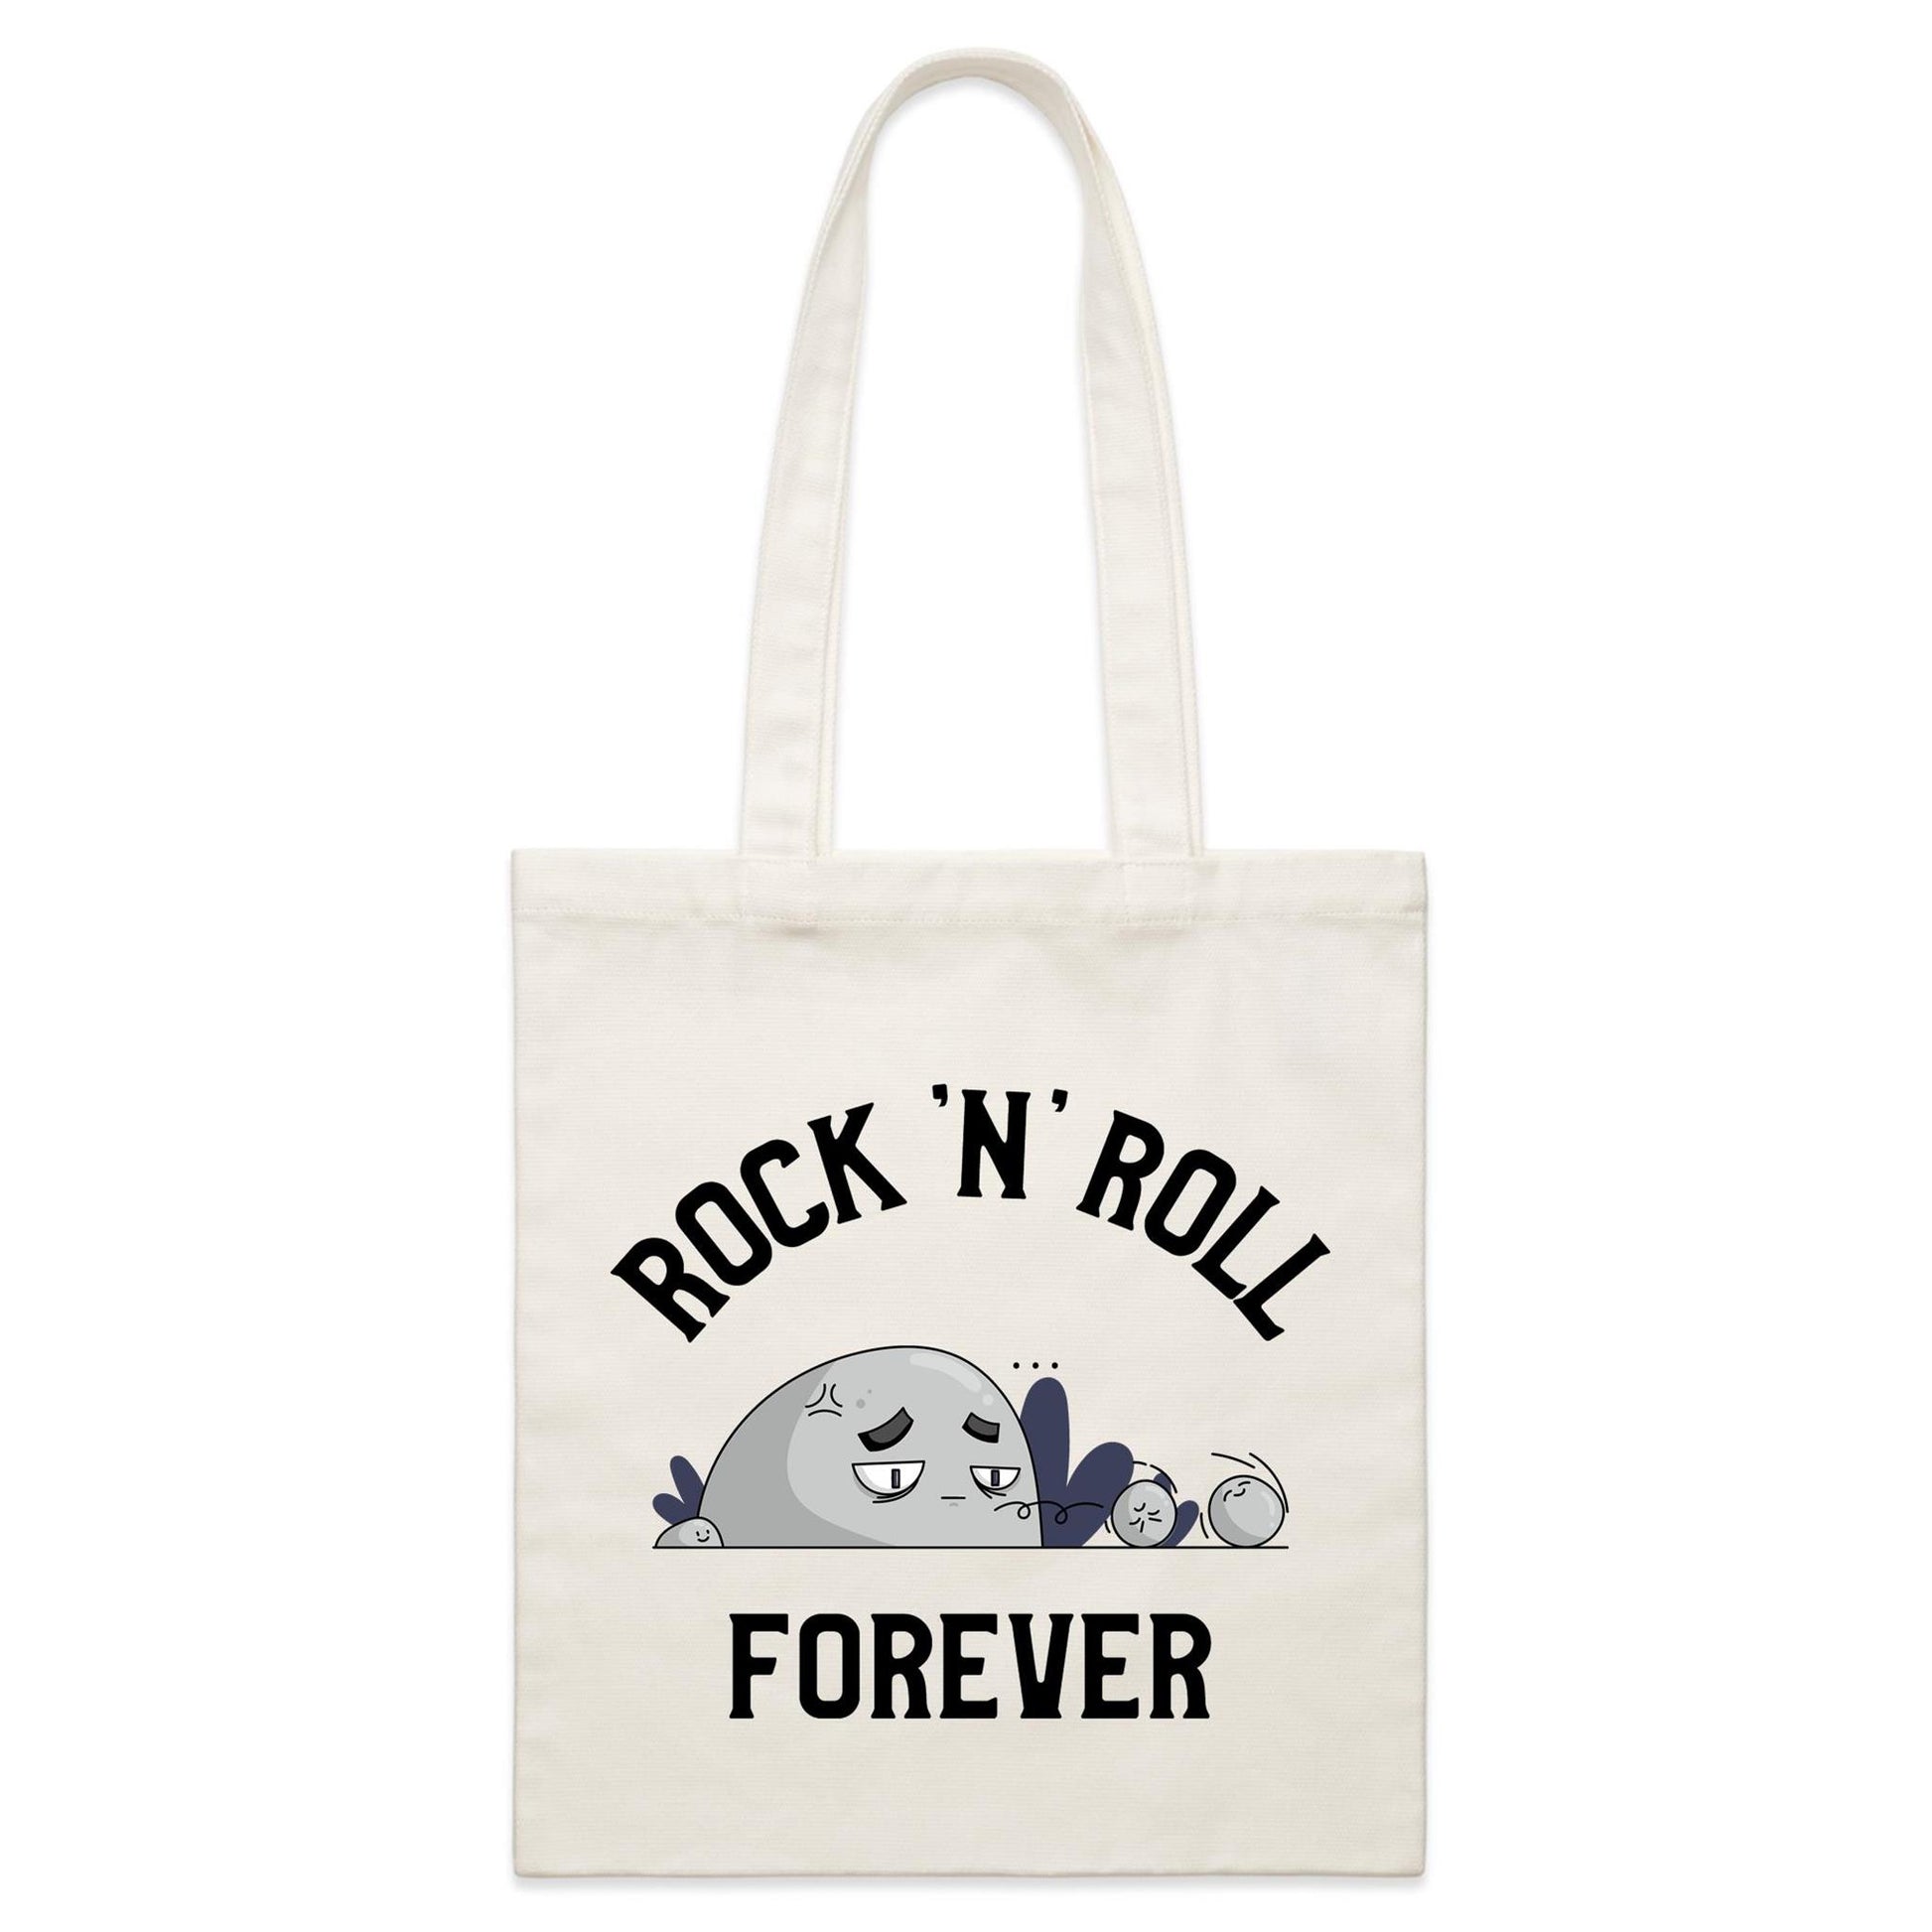 Rock 'N' Roll Forever - Parcel Canvas Tote Bag Default Title Parcel Tote Bag Music